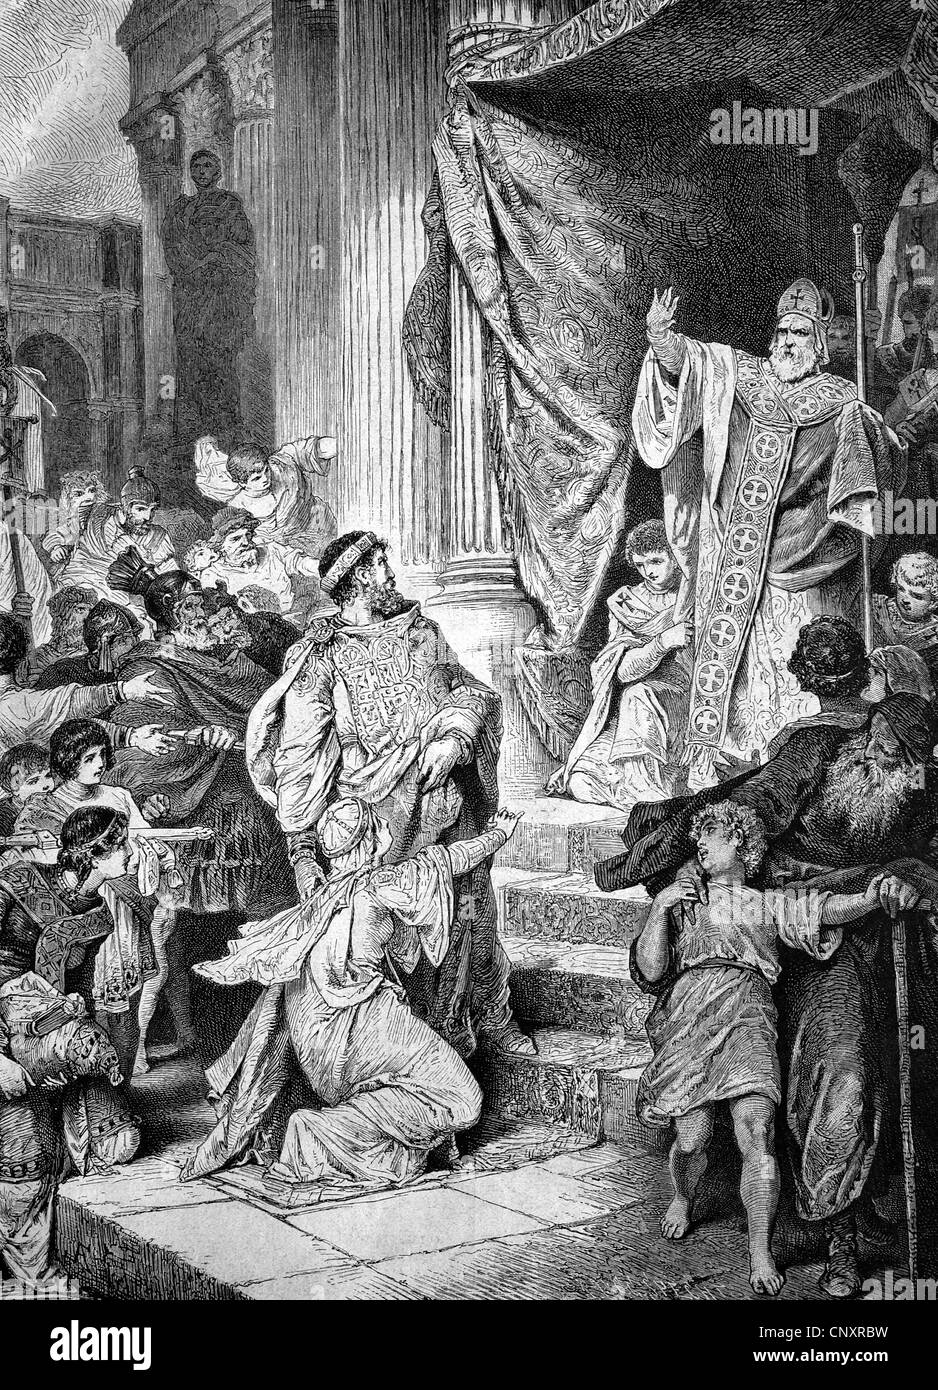 La primera excomunión de un príncipe, el obispo san Ambrosio de Milán se negó a permitir que el emperador Teodosio entran a la iglesia y excommunic Foto de stock